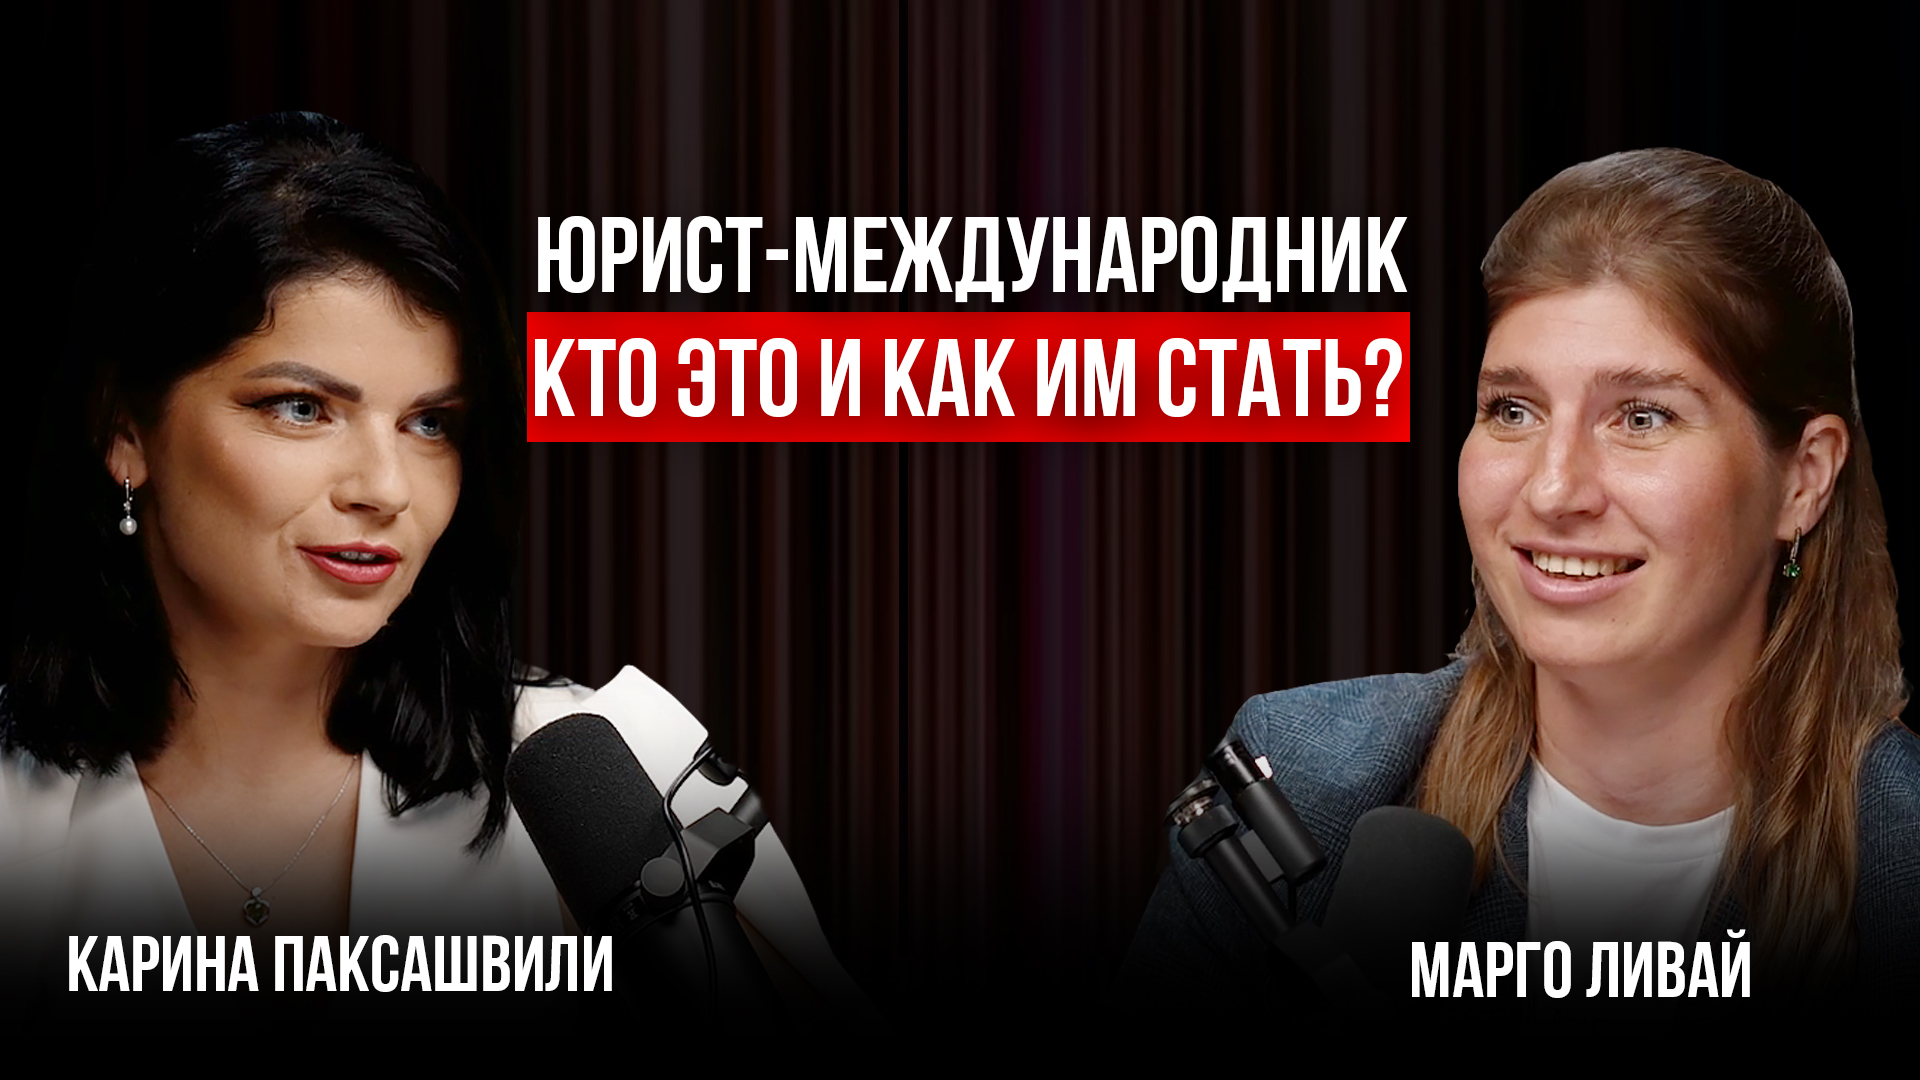 Карина Паксашвили | Юрист-международник: кто это и как им стать?